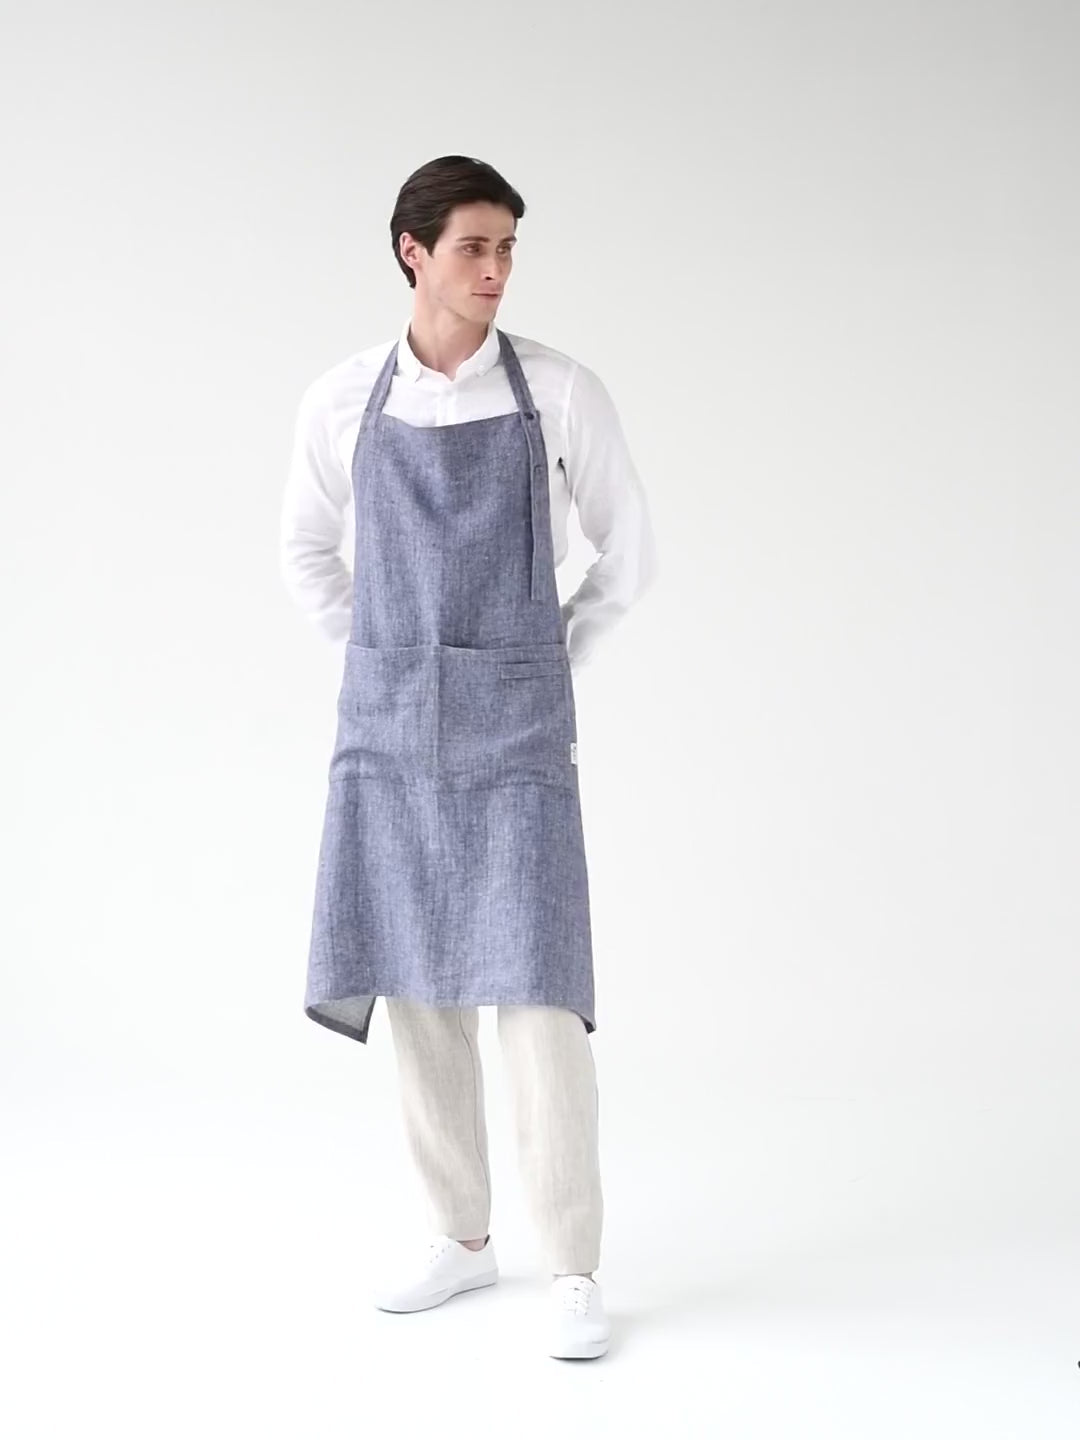 Men's linen apron in denim pattern - MagicLinen